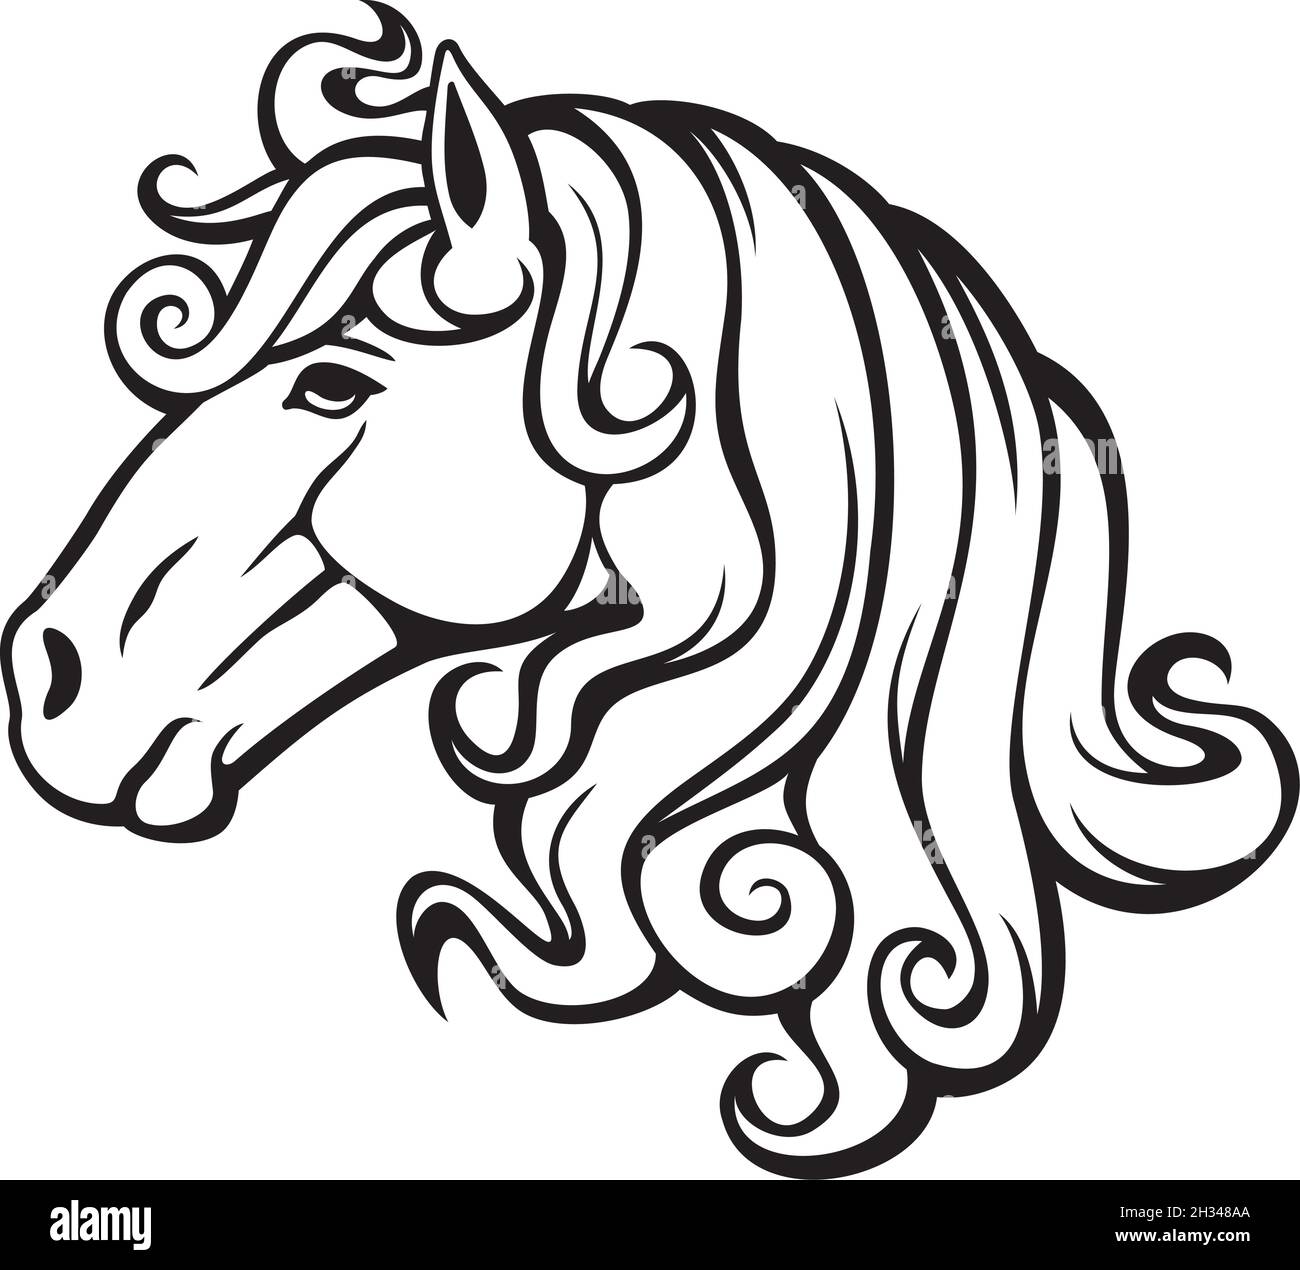 Illustrazione vettoriale della testa del cavallo Illustrazione Vettoriale